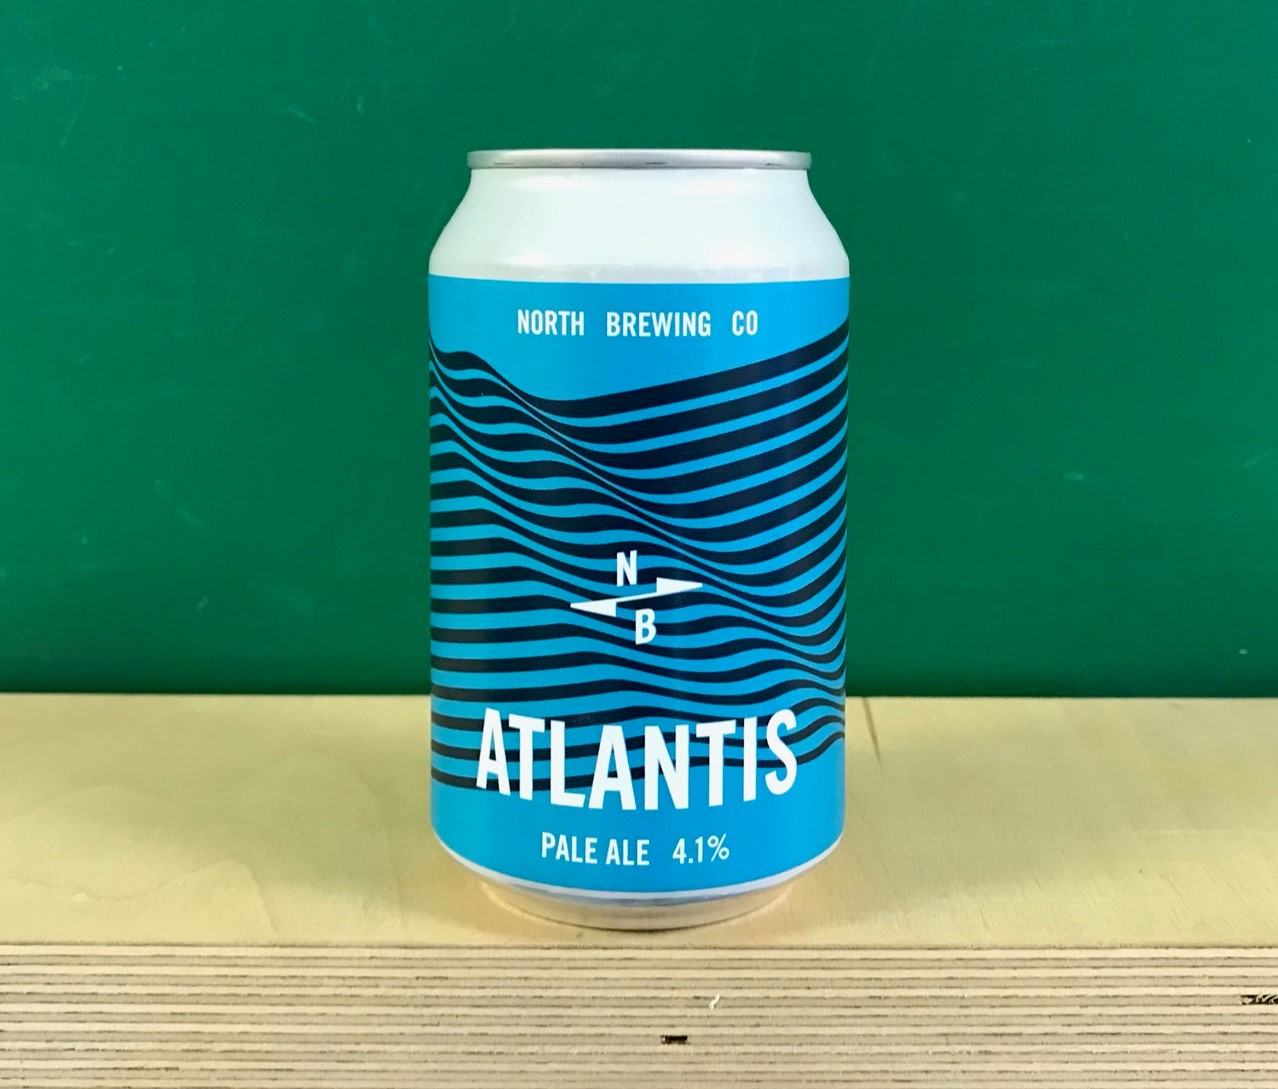 North Brewing Co Atlantis